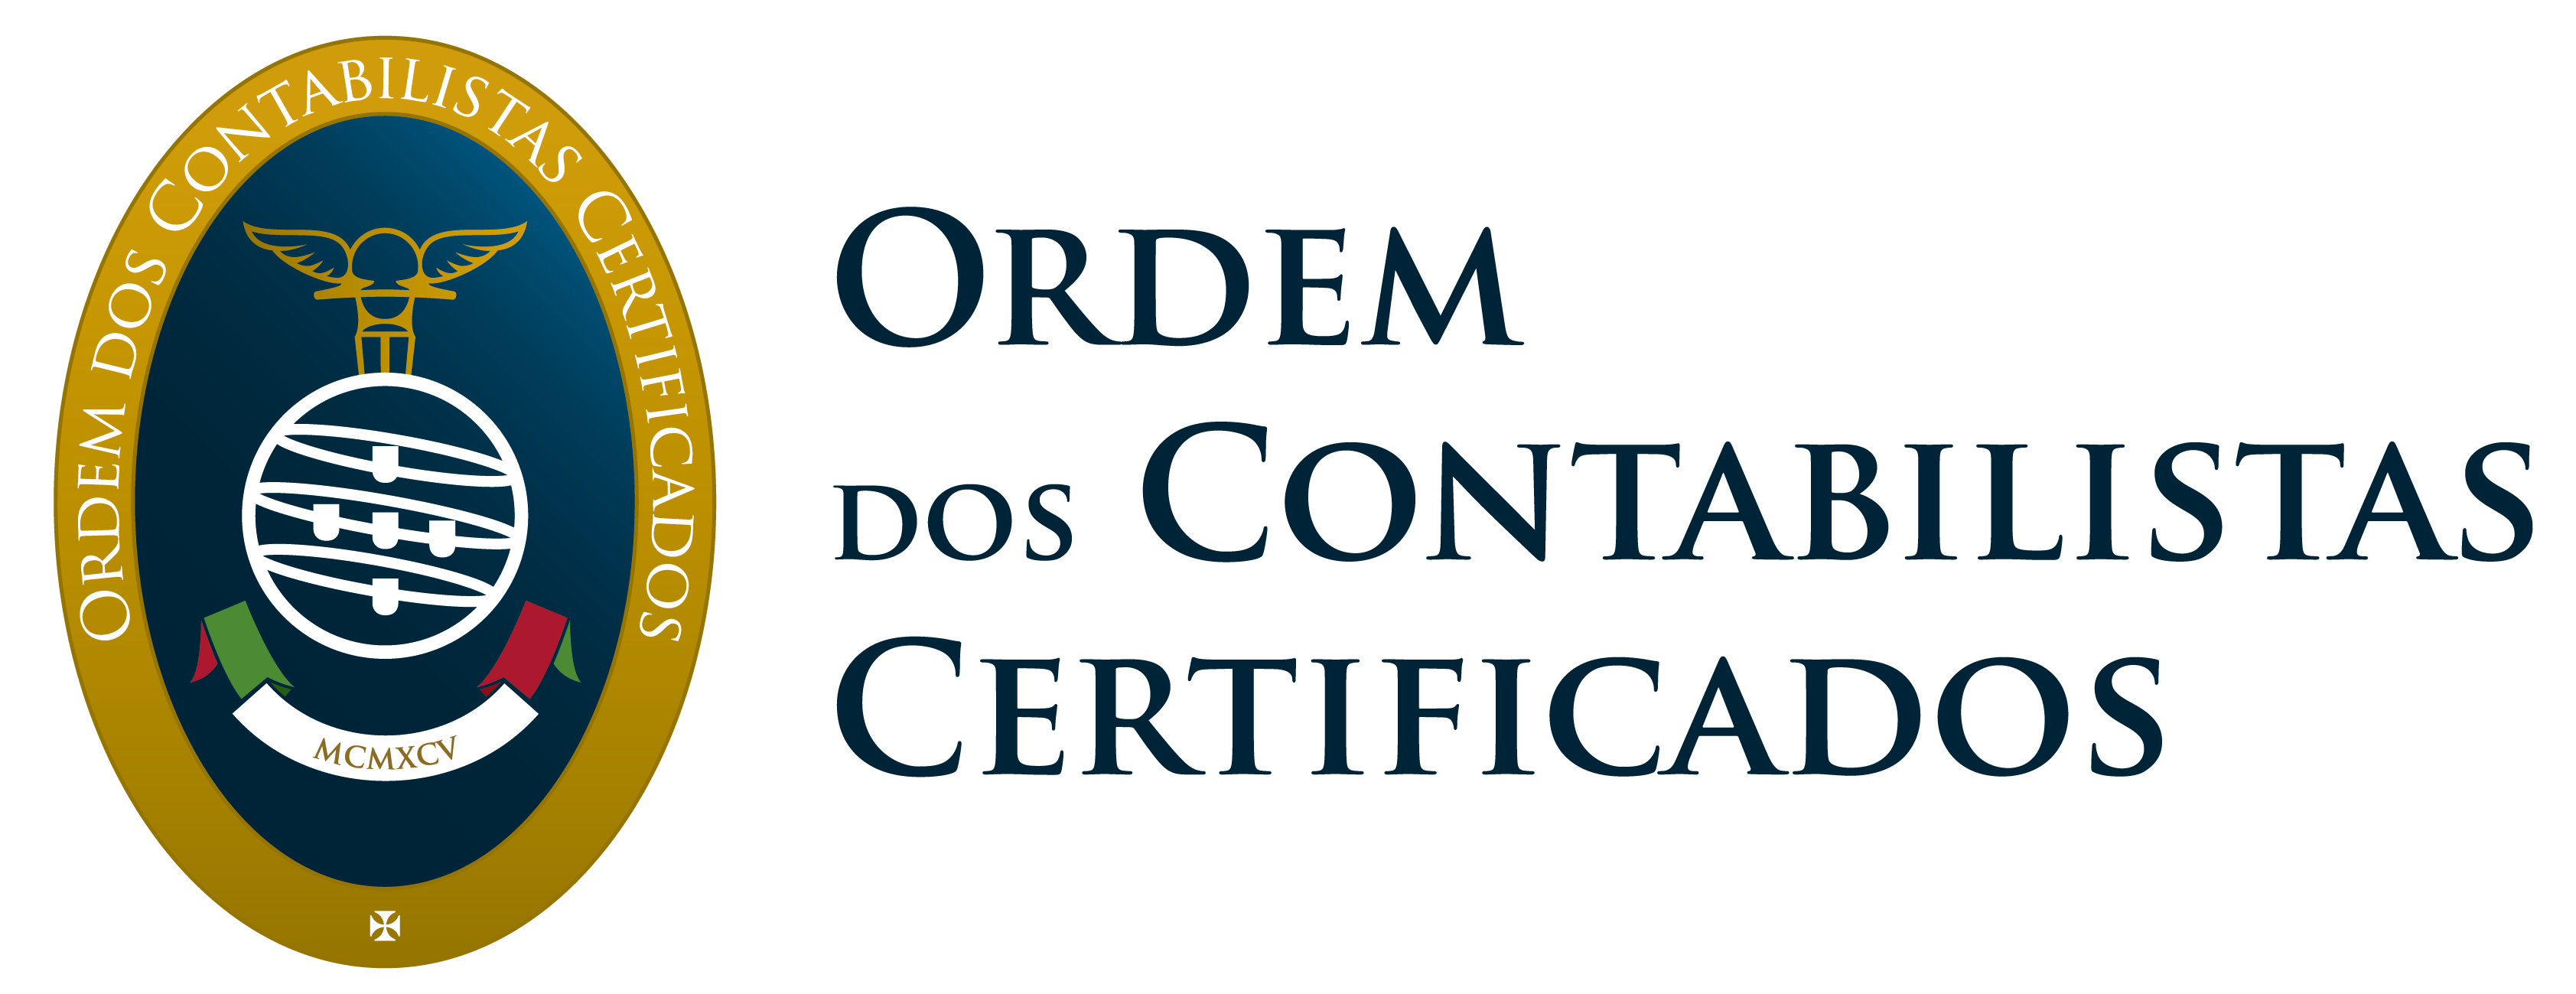 Ordem dos Contabilistas Certificados"